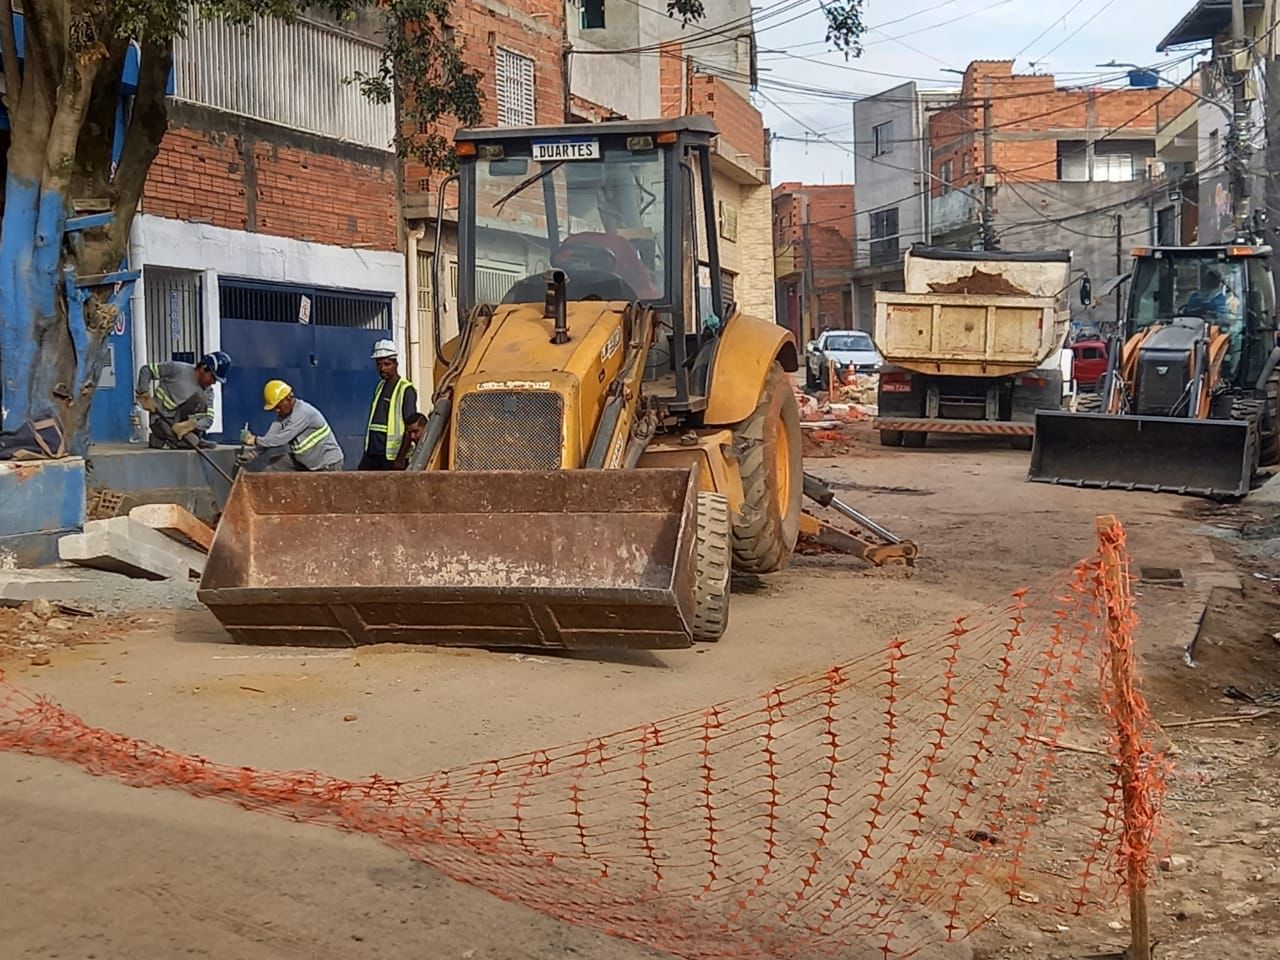 Escavadeira de cor amarela realizando a obra de construção de vias e sarjetas em uma rua de terra.